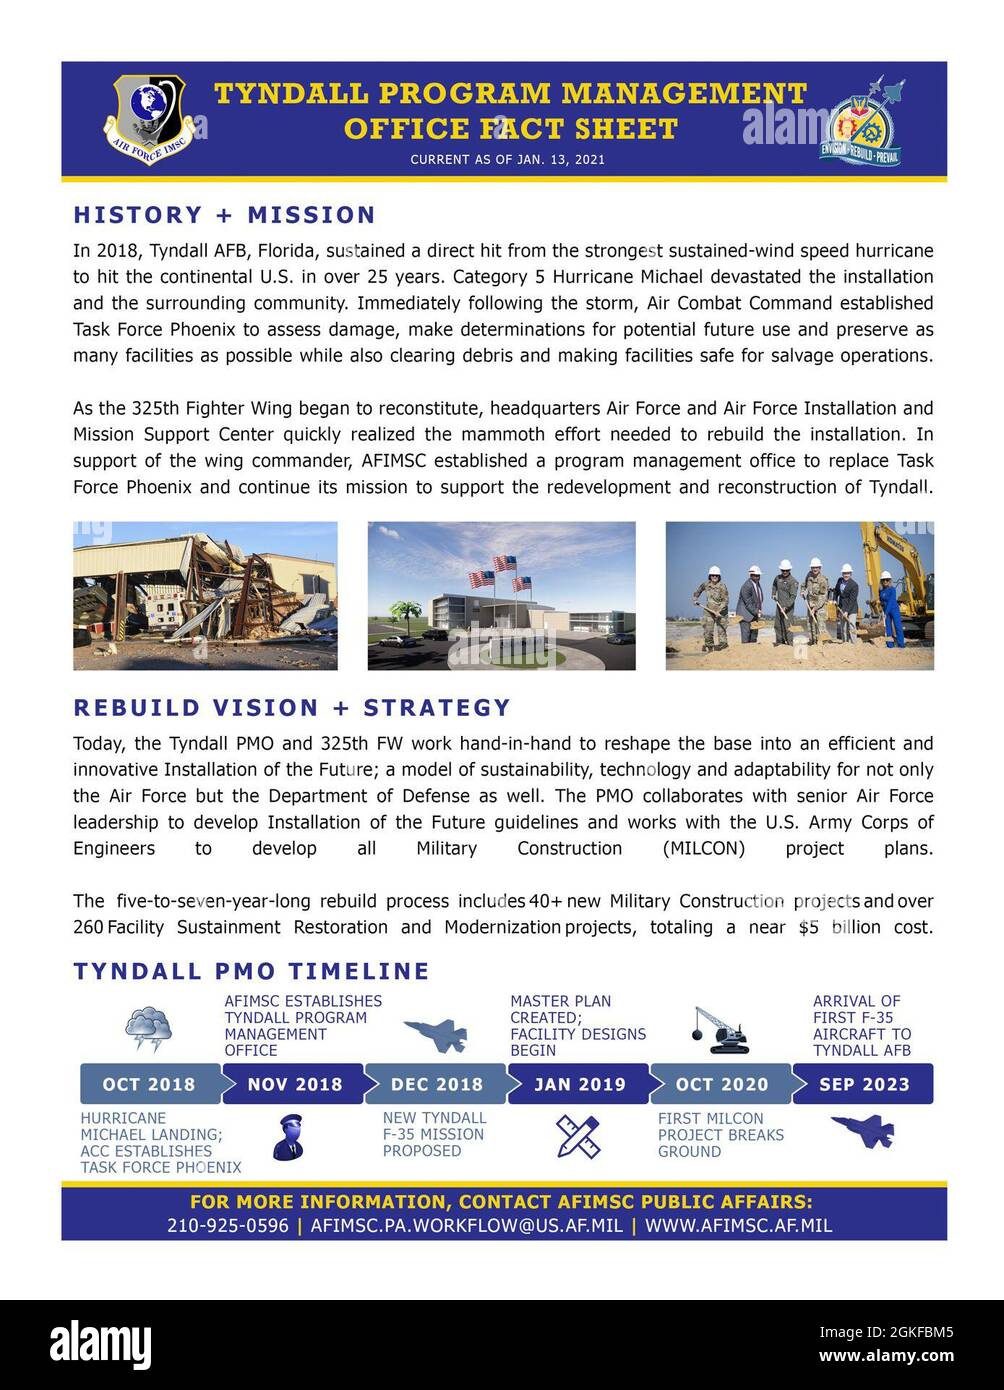 L'histoire et la mission du Bureau de gestion des programmes de la base aérienne de Tyndall, en Floride. Banque D'Images